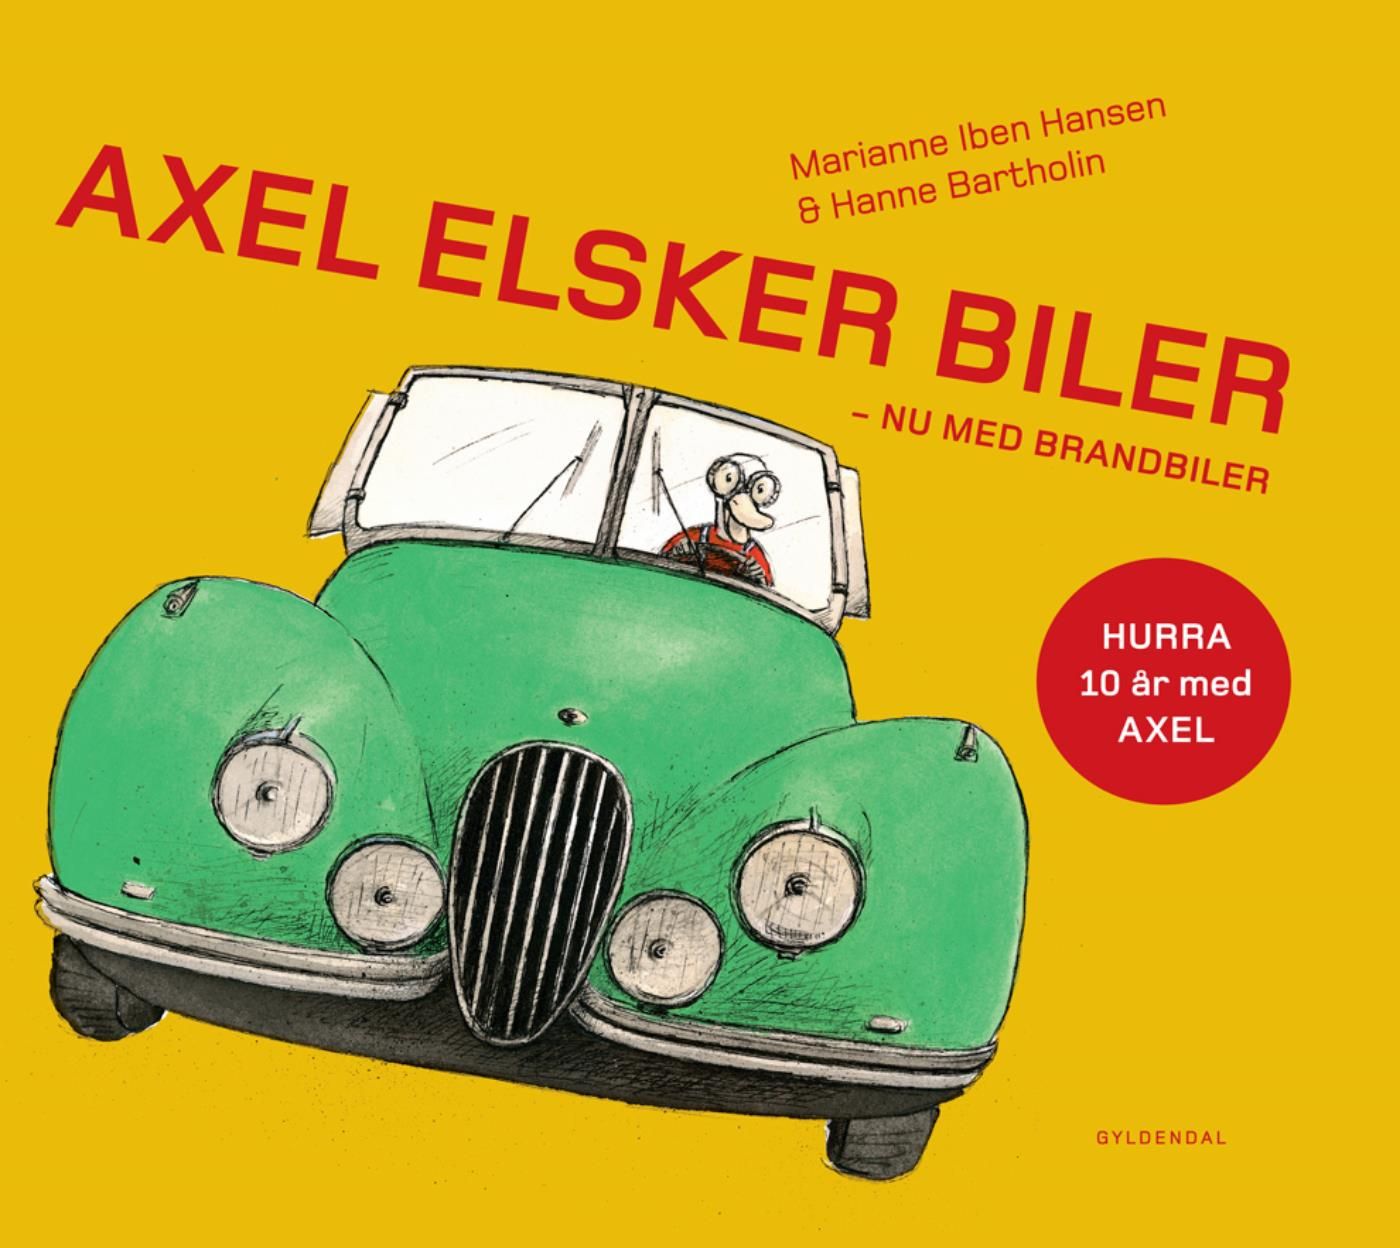 Axel elsker biler - Lyt&læs, e-bok av Hanne Bartholin, Marianne Iben Hansen